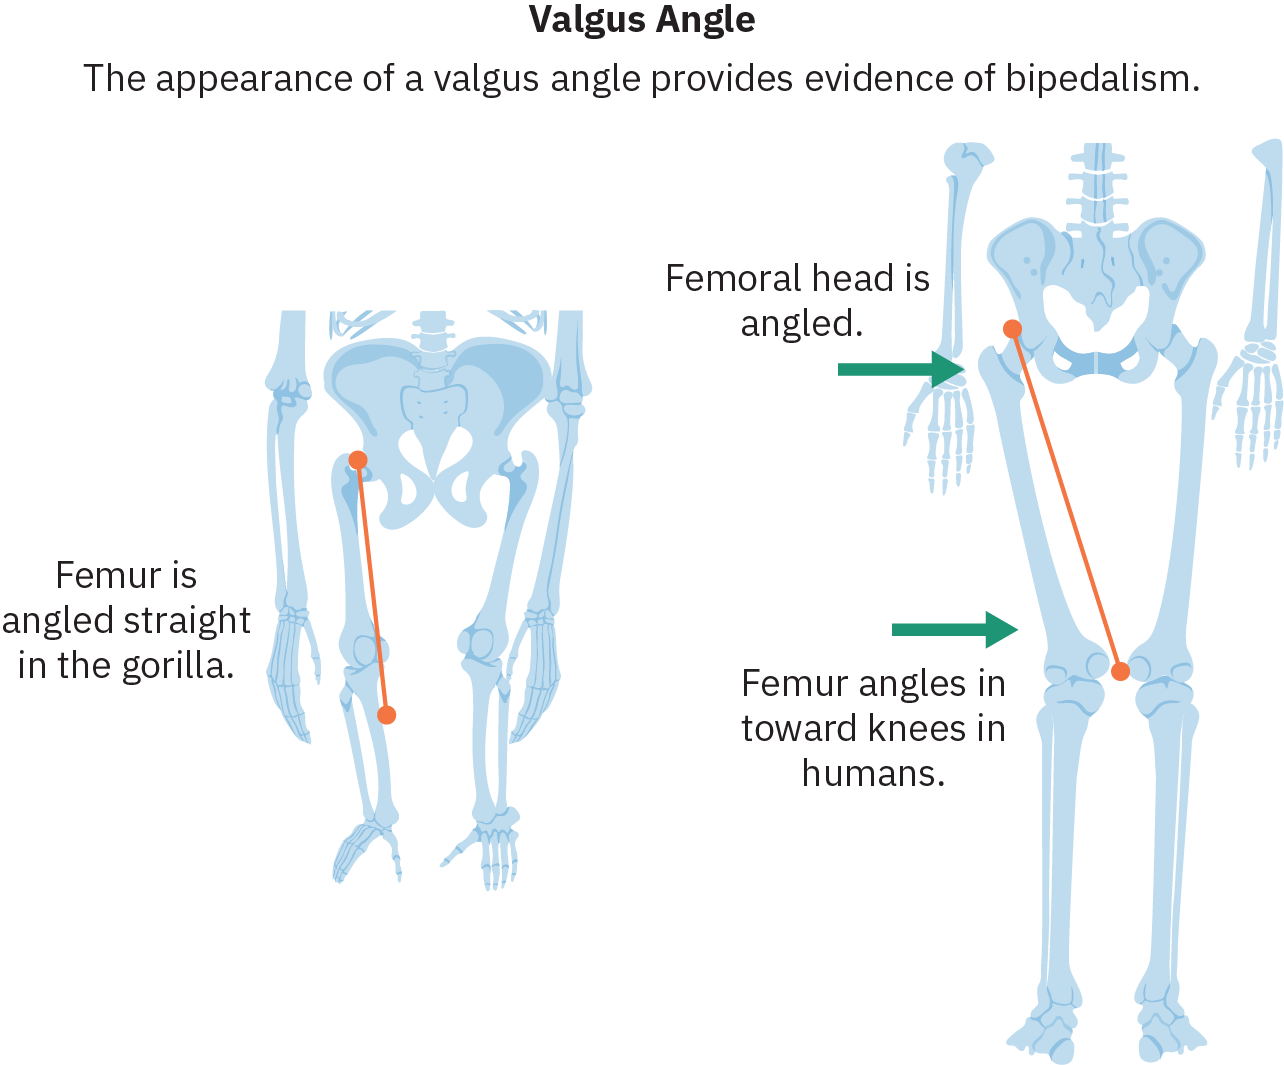 Croquis des hanches et des pattes de deux espèces différentes. Sur la gauche se trouve un squelette avec de longs bras et de courtes jambes qui s'étendent tout droit depuis les hanches. Une ligne trace le fémur (os de la partie supérieure de la jambe) et le texte correspondant indique « Le fémur est incliné droit chez le gorille ». Sur la droite se trouve un squelette humain. Les fémurs de ce squelette sont inclinés vers l'intérieur, les genoux étant plus rapprochés que les orbites des hanches. Le texte pointant vers la hanche indique « La tête fémorale est inclinée ». Le texte pointant vers le fémur indique « Le fémur fait un angle vers les genoux chez l'homme ».